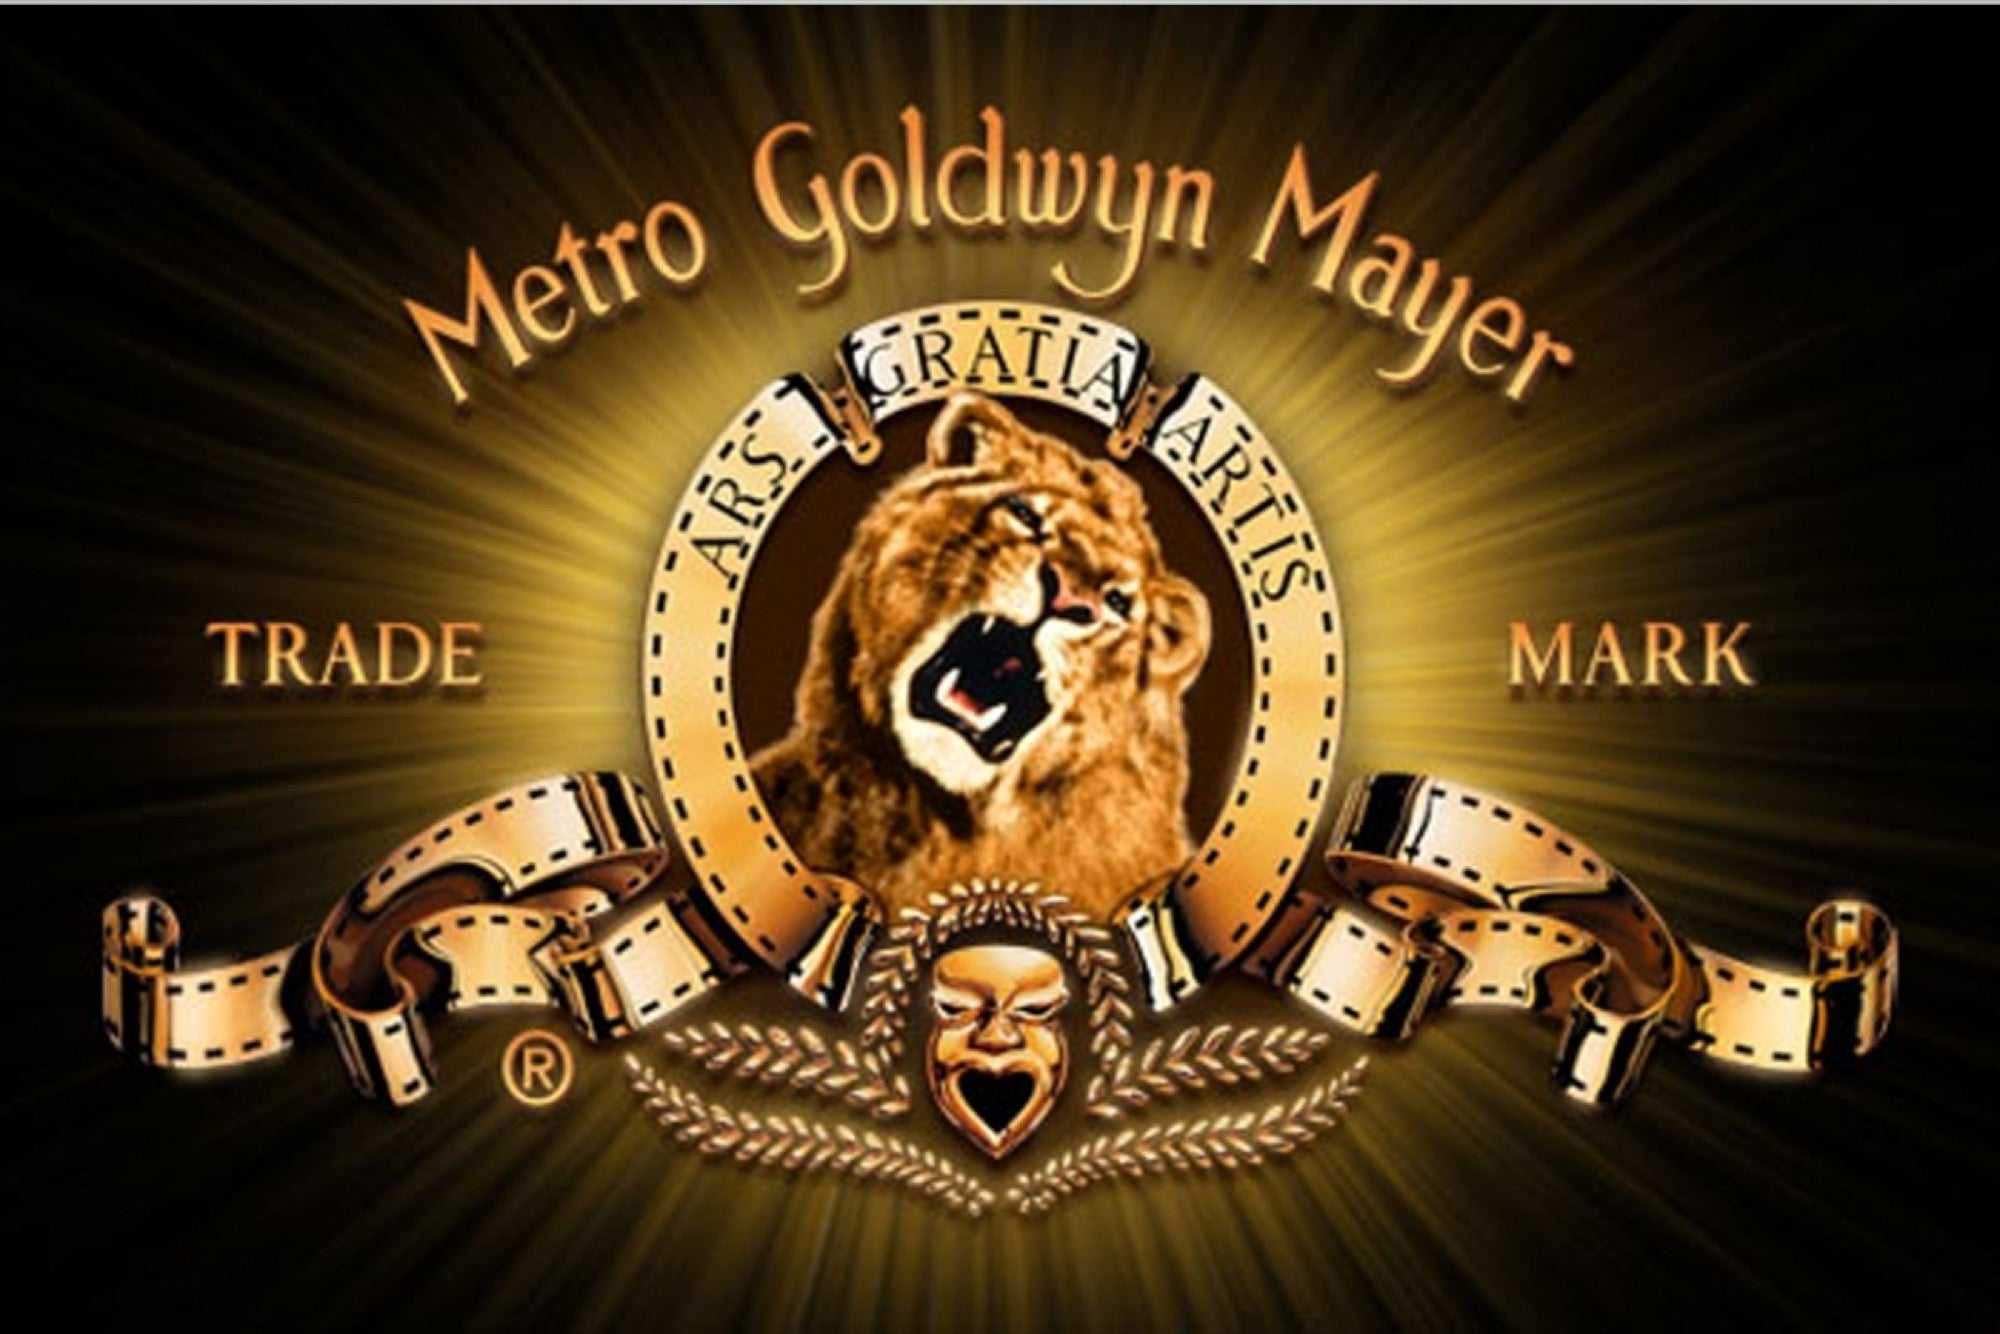 Отель mgm metro-goldwyn-mayer? – celebrity.fm - официальные звезды №1, деловая и людская сеть, wiki, история успеха, биография и цитаты